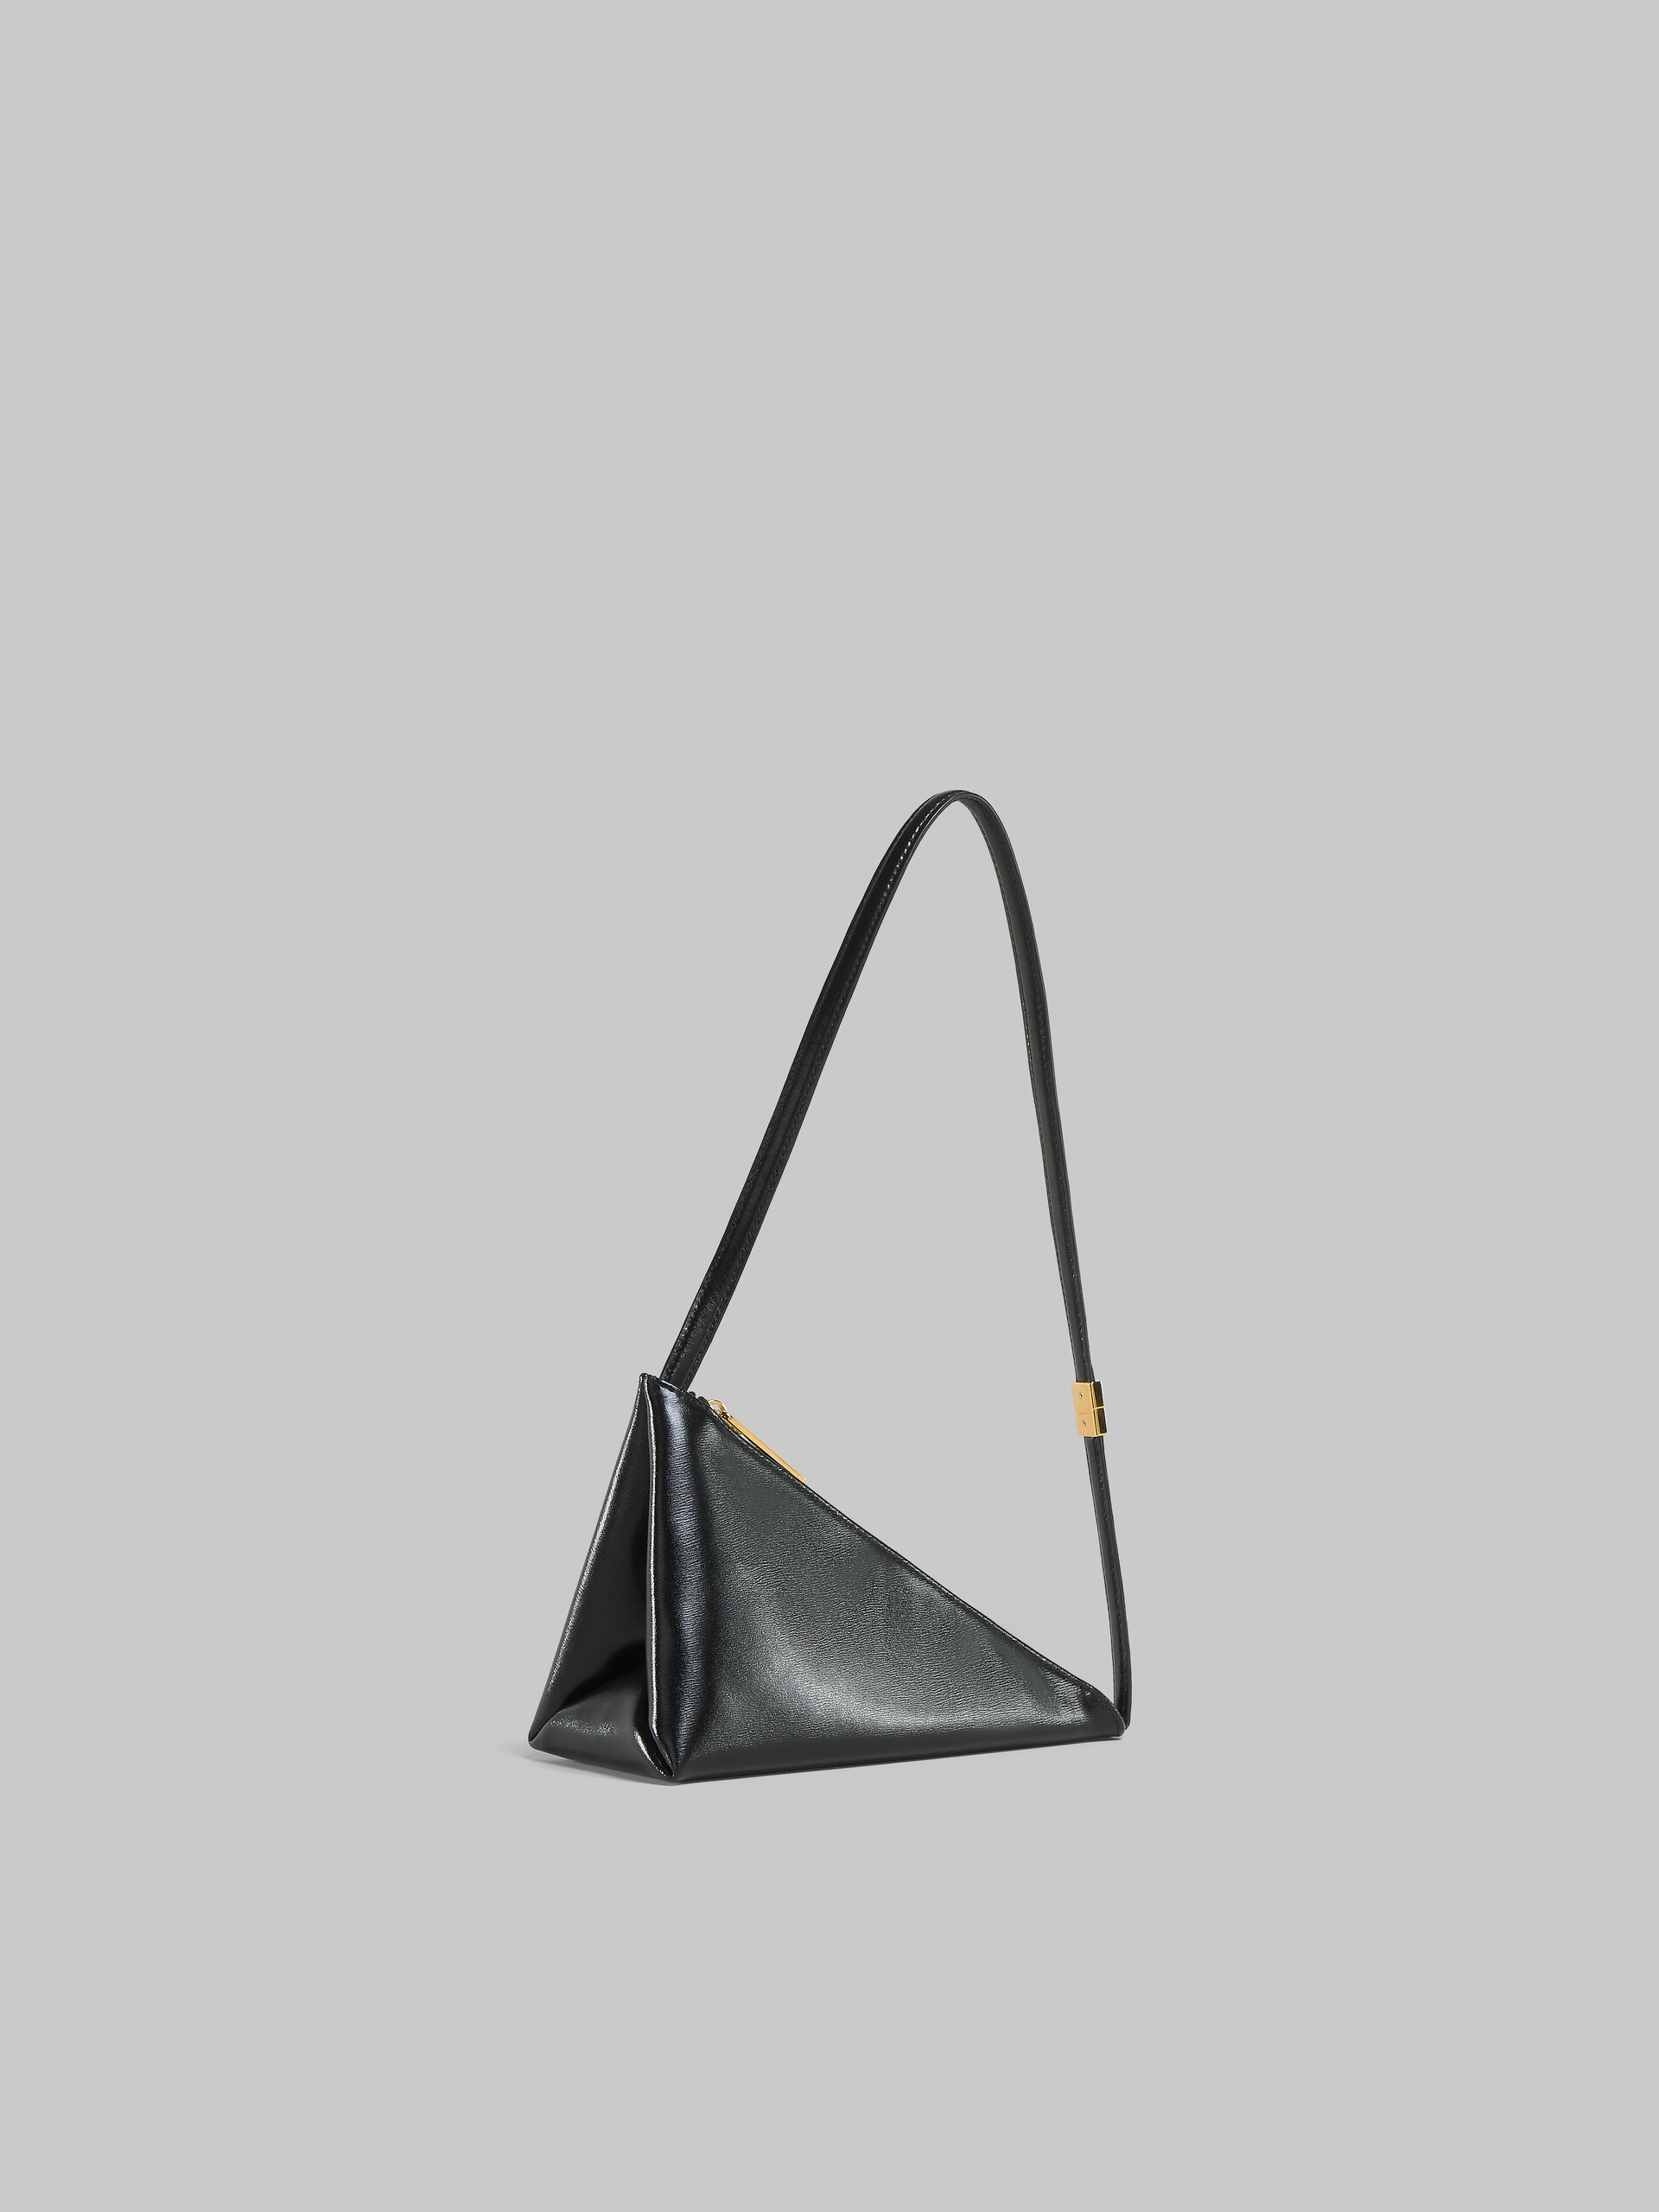 Sac à bandoulière Prisma Triangle en cuir noir - Sacs portés épaule - Image 5